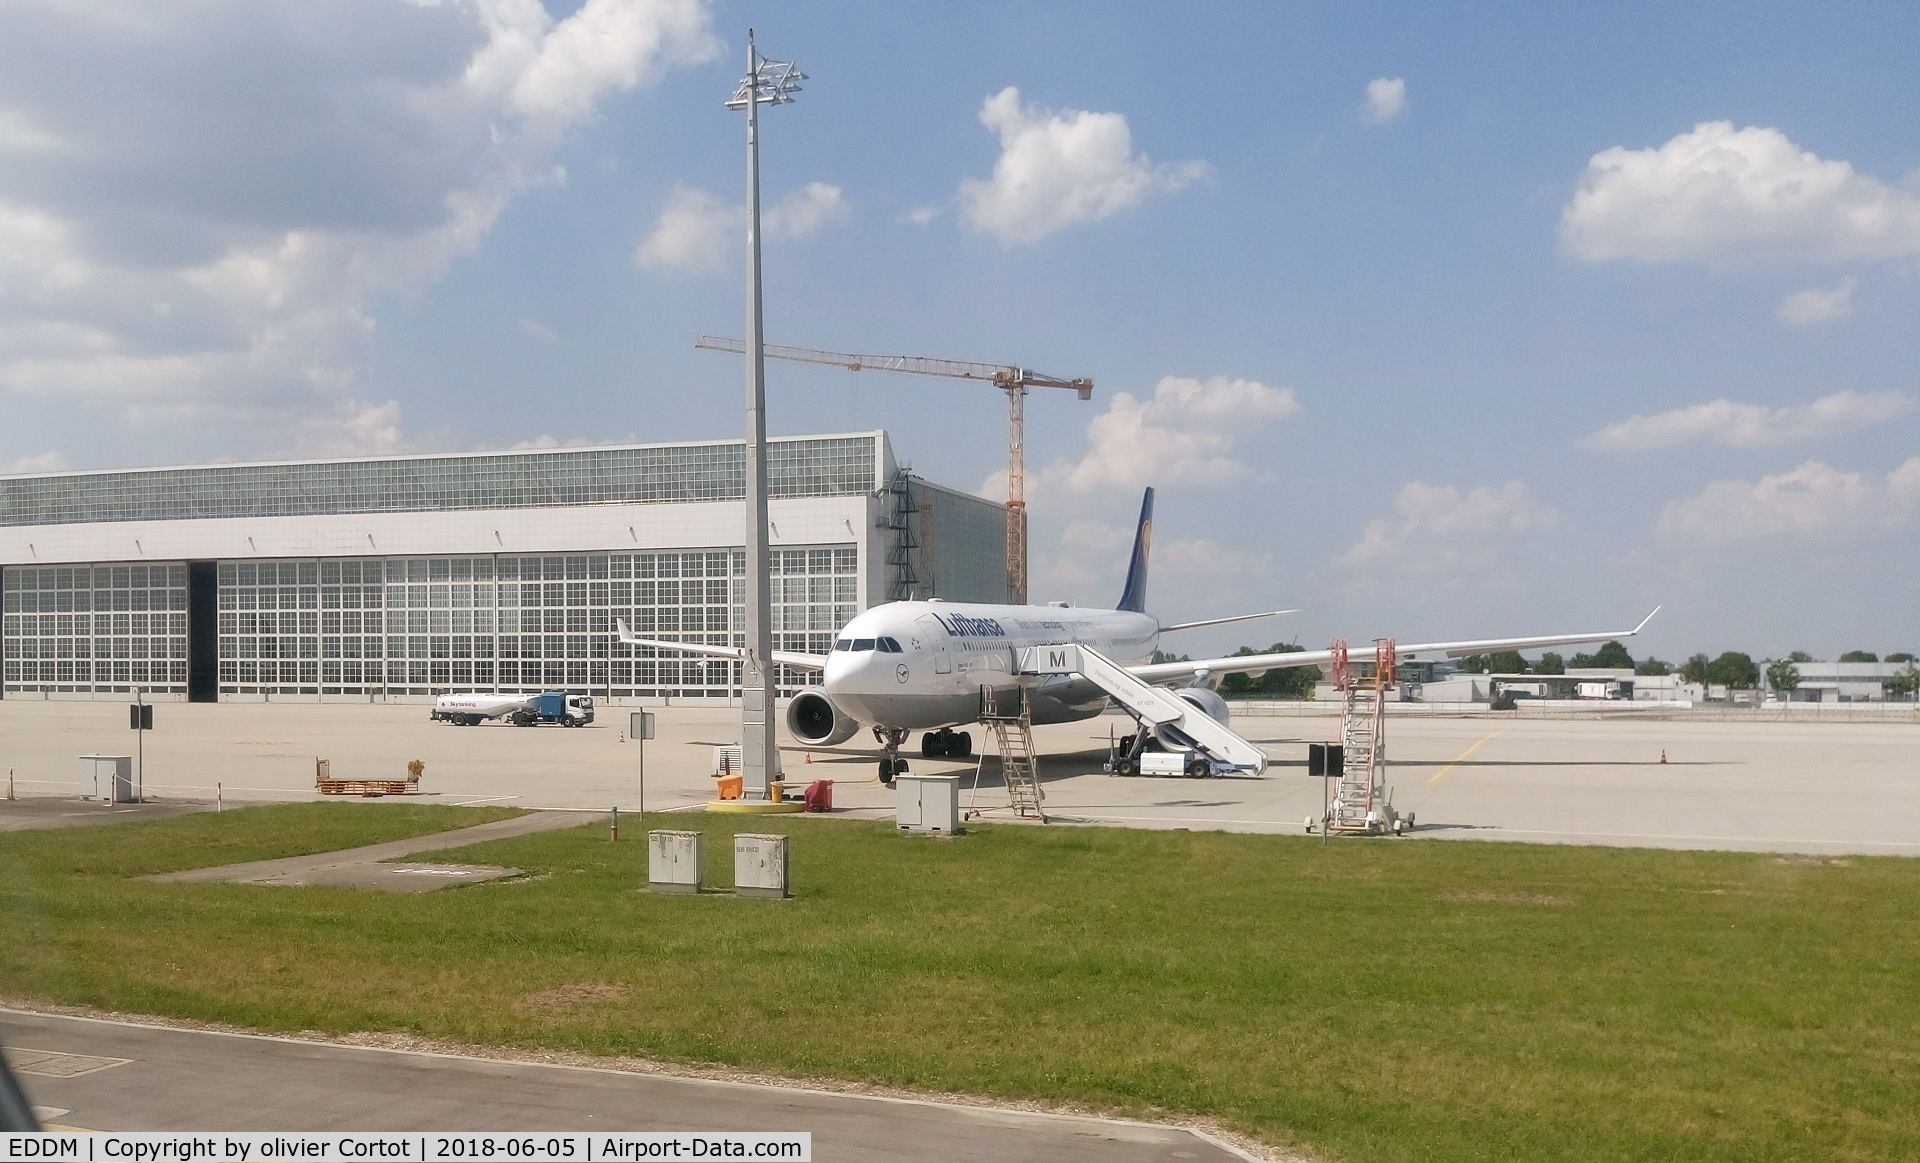 Munich International Airport (Franz Josef Strauß International Airport), Munich Germany (EDDM) - view from the taxiway